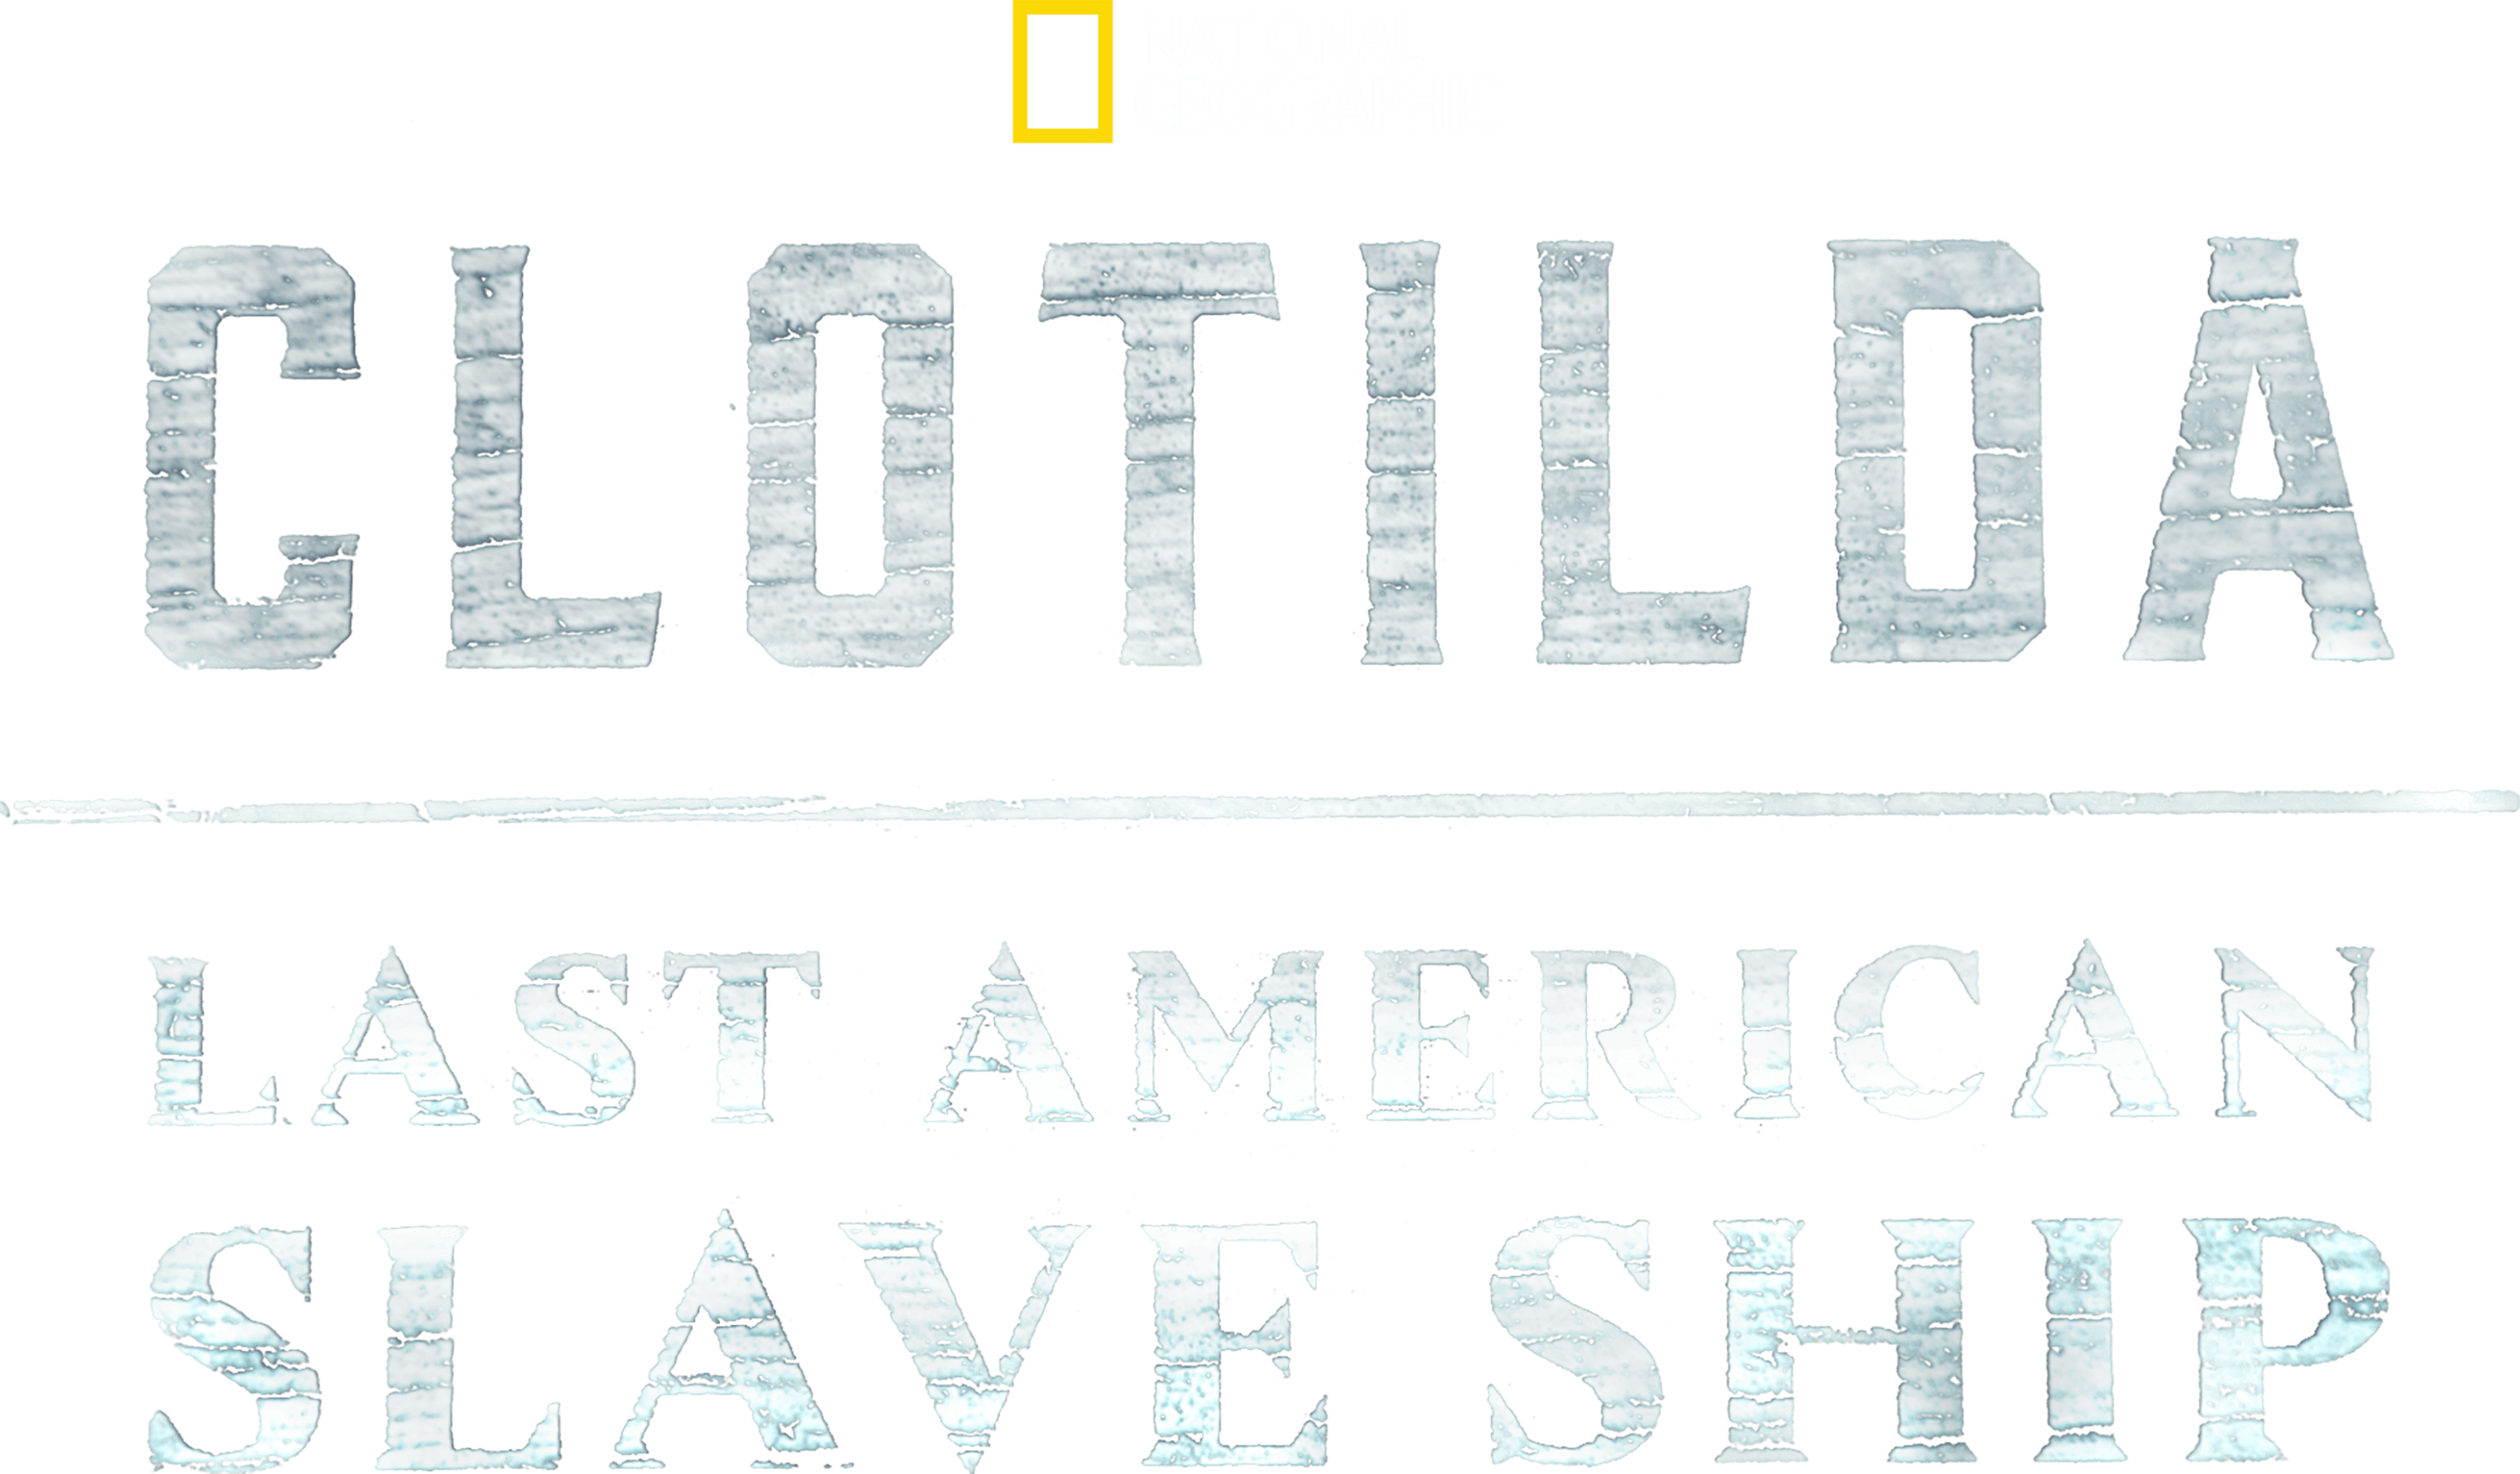 Clotilda: Last American Slave Ship logo